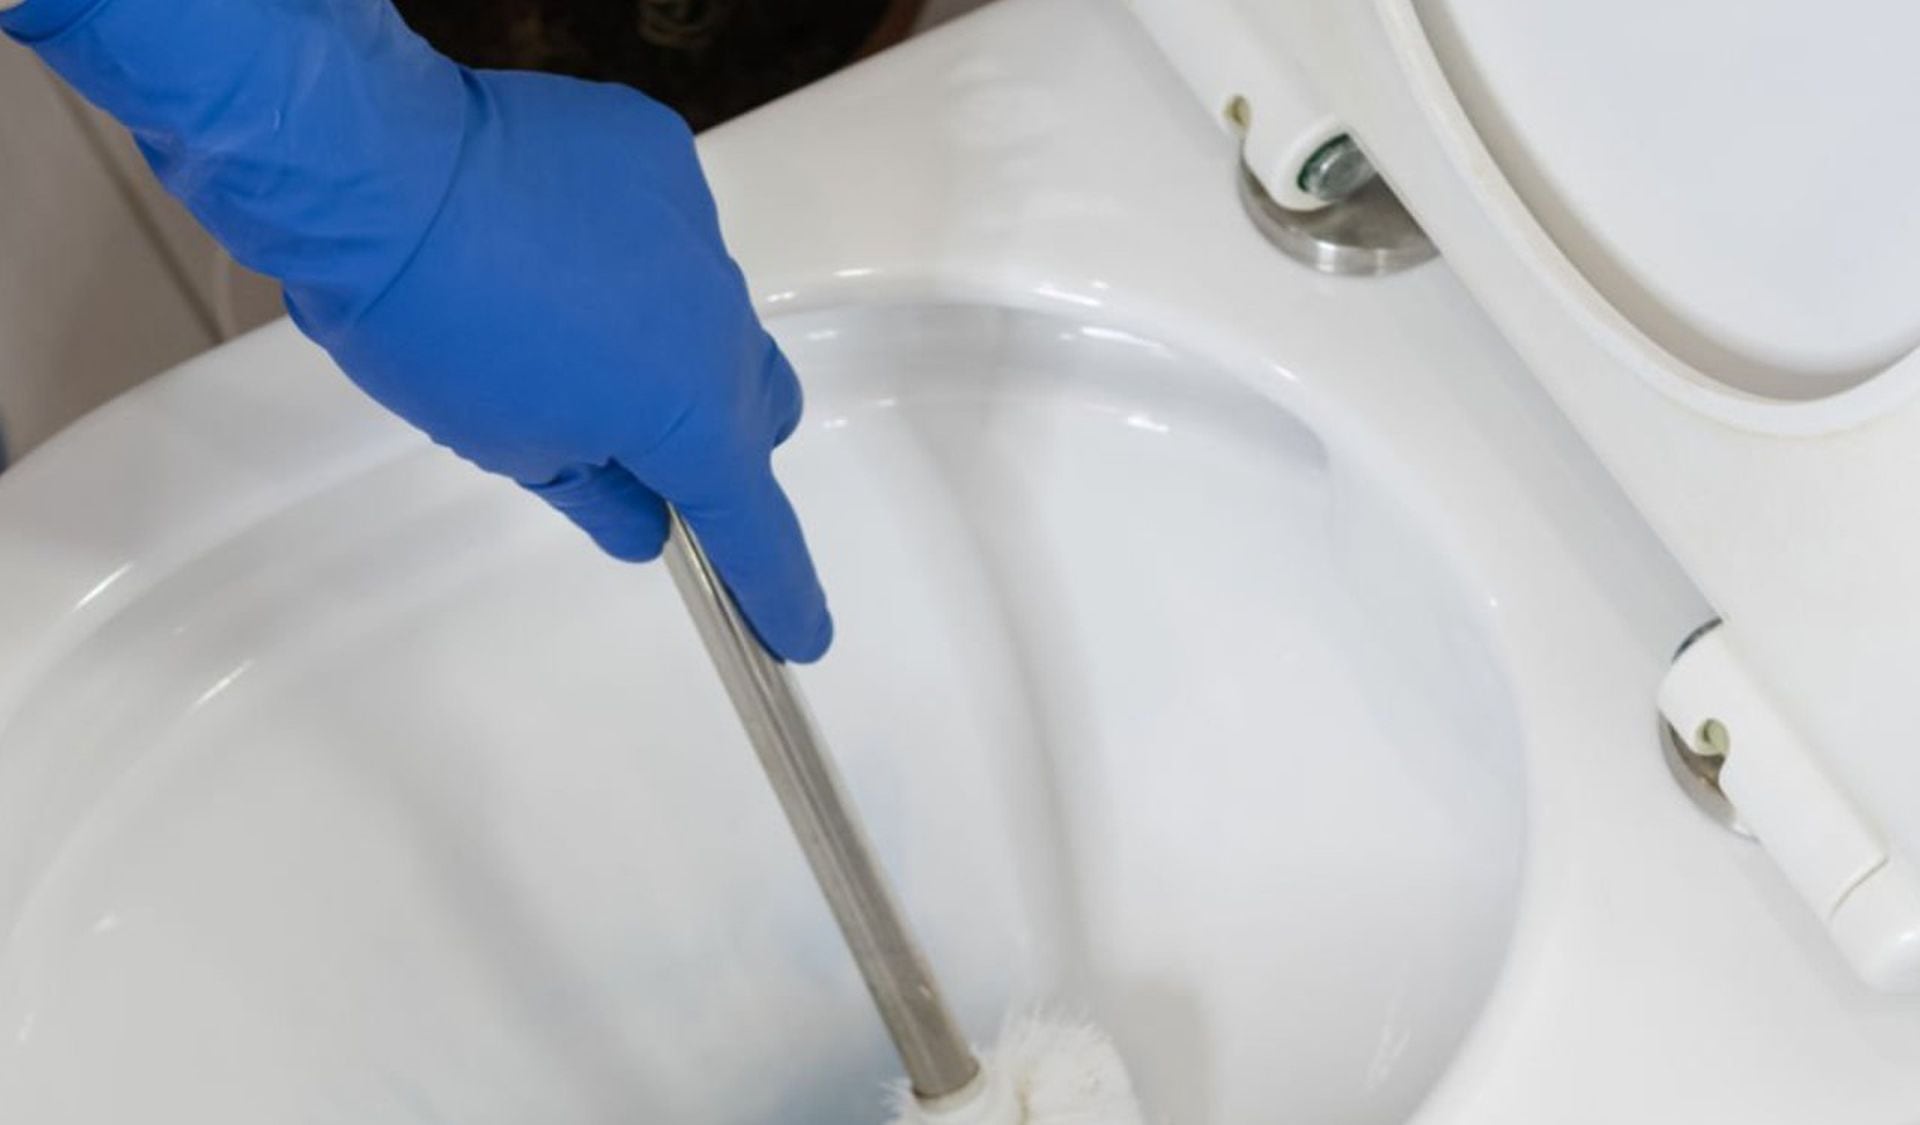 El trucazo del año para limpiar y desinfectar la escobilla del baño en 1  minuto SIN TOCARLA